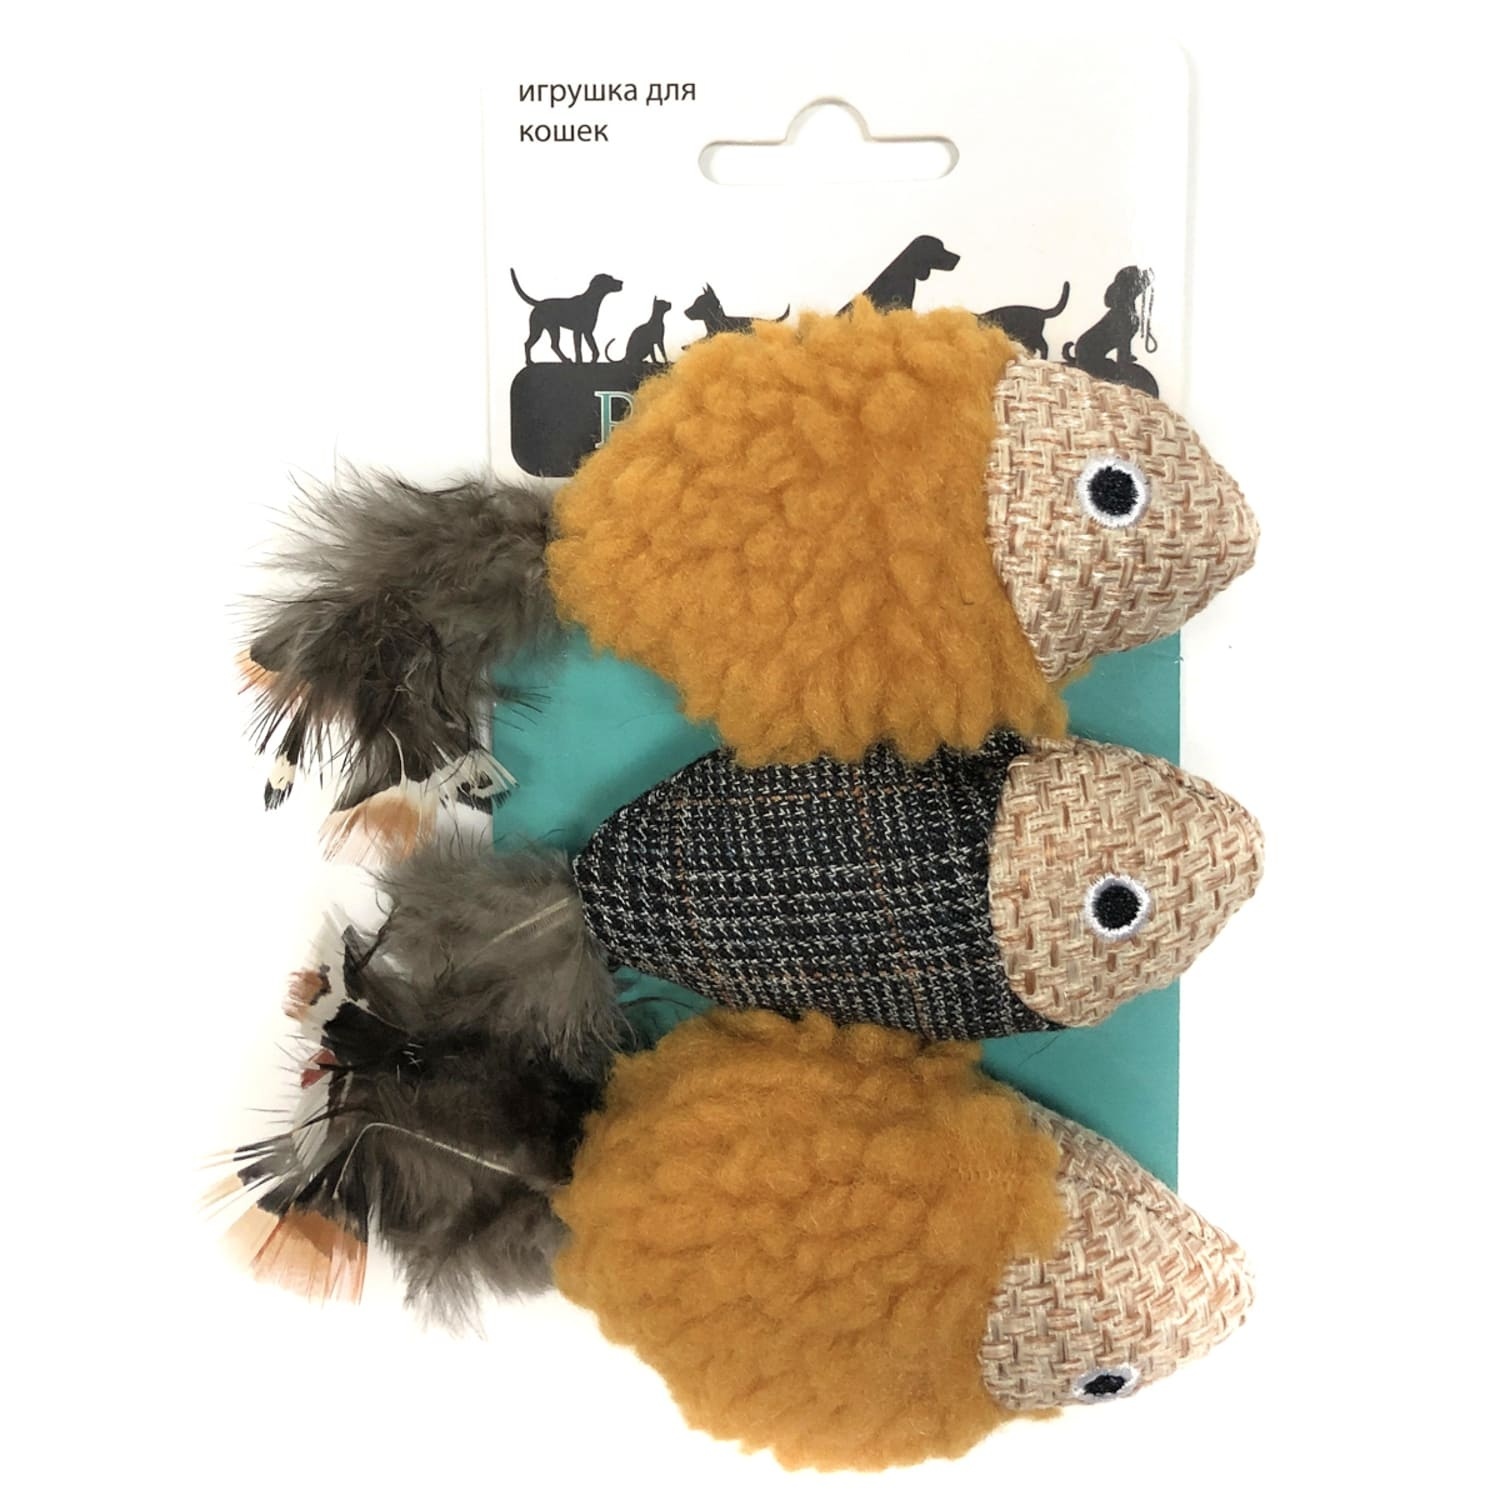 Aromadog игрушка для кошек рыбки, 3 шт (34 г) Aromadog игрушка для кошек рыбки, 3 шт (34 г) - фото 1